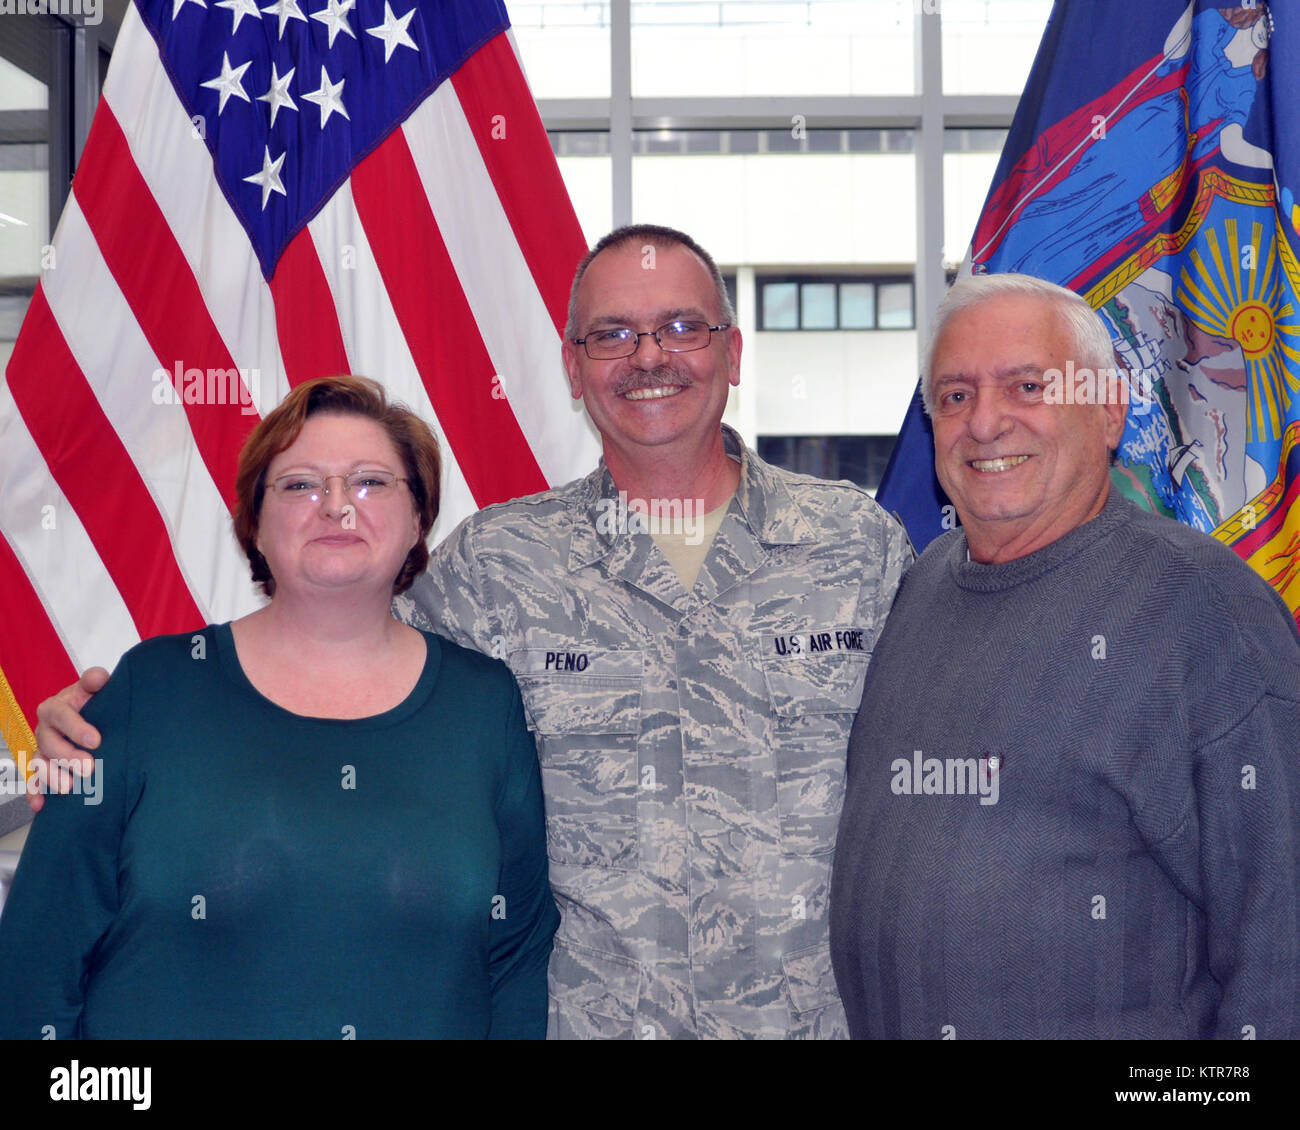 Shawn Peno, un résident de Schenectady et un vétéran de la guerre en Irak, pose avec sa femme Joan et le père Peter Peno lors de sa promotion au grade de Master Chef Sgt.-le plus haut rang a recruté lors d'une cérémonie d'une division d'affaires militaires et navales Siège le vendredi 2 décembre. Peno, un vétéran de 25 ans de l'Armée de l'air et l'Air National Guard, occupe actuellement le haut sous-officier dans la Garde Nationale de New York's domestic operations section qui comprend plus de 800 soldats et aviateurs, Citoyen. Banque D'Images